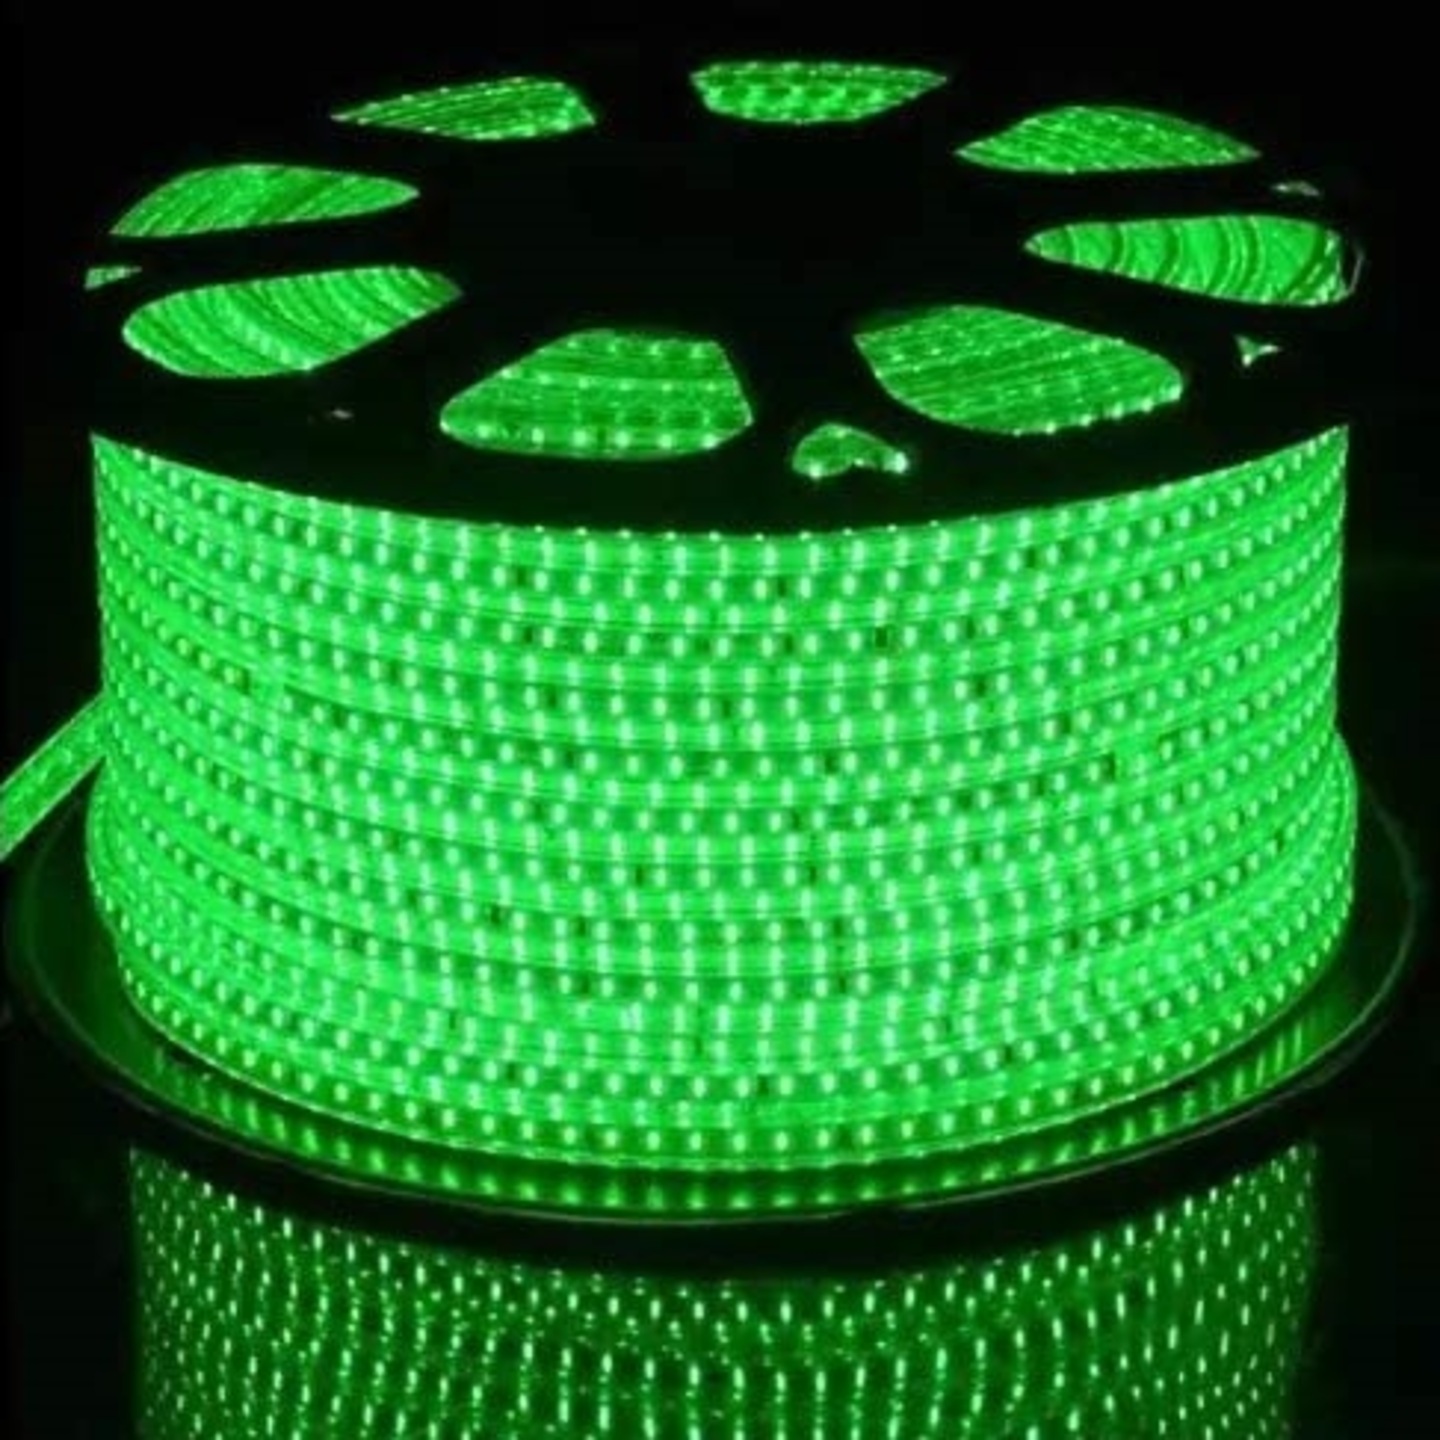 30 Meter Waterproof LED Rope Light (Green)